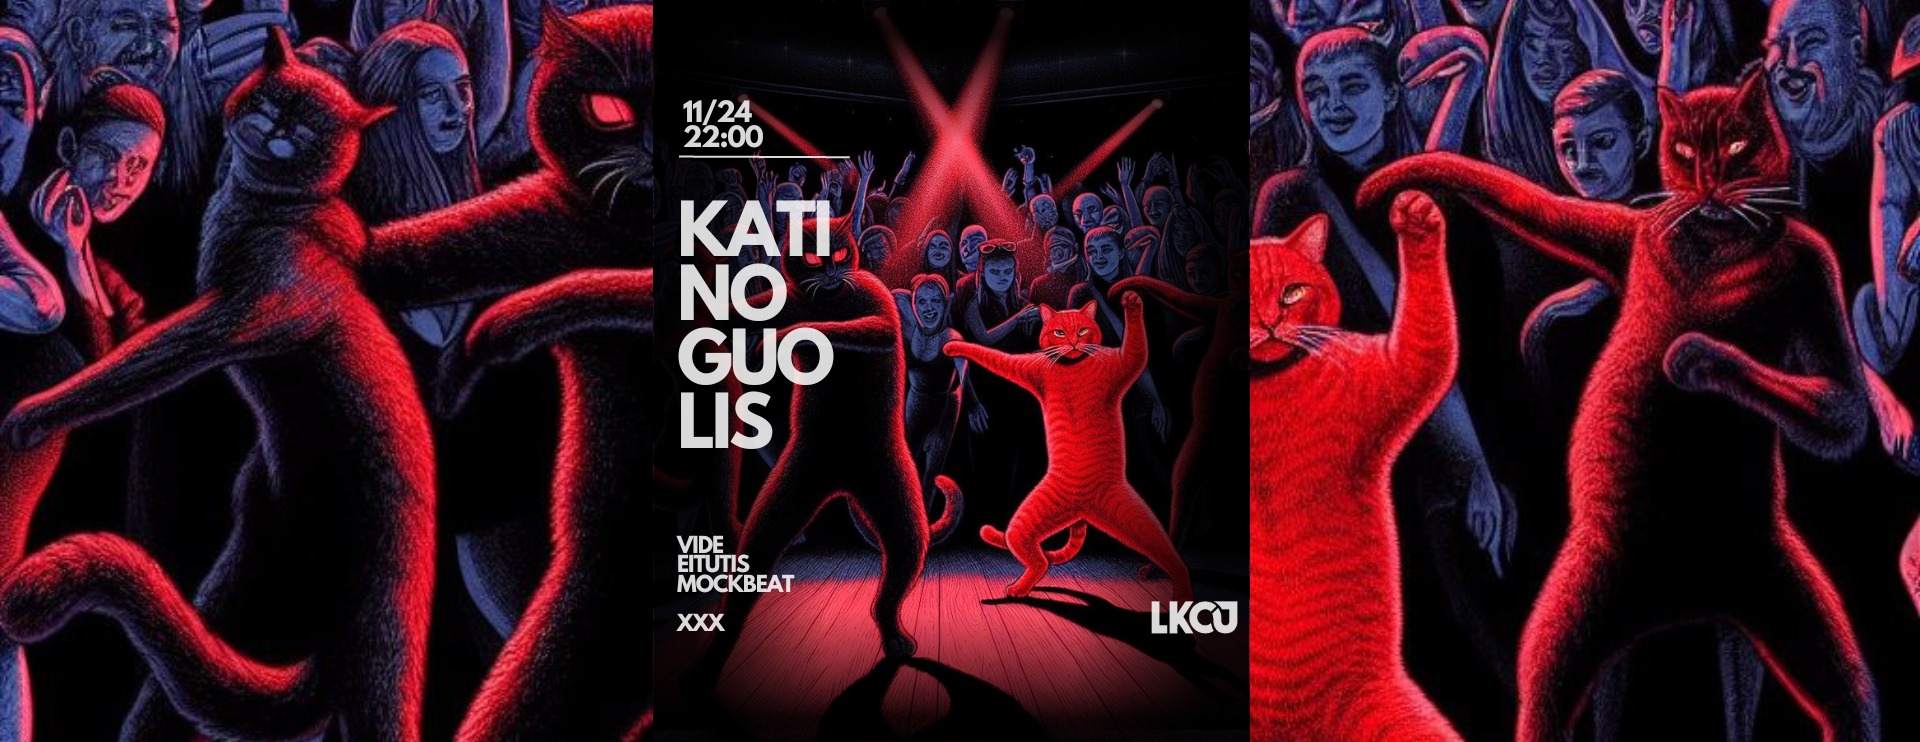 LKCJ: Katino Guolis - フライヤー表